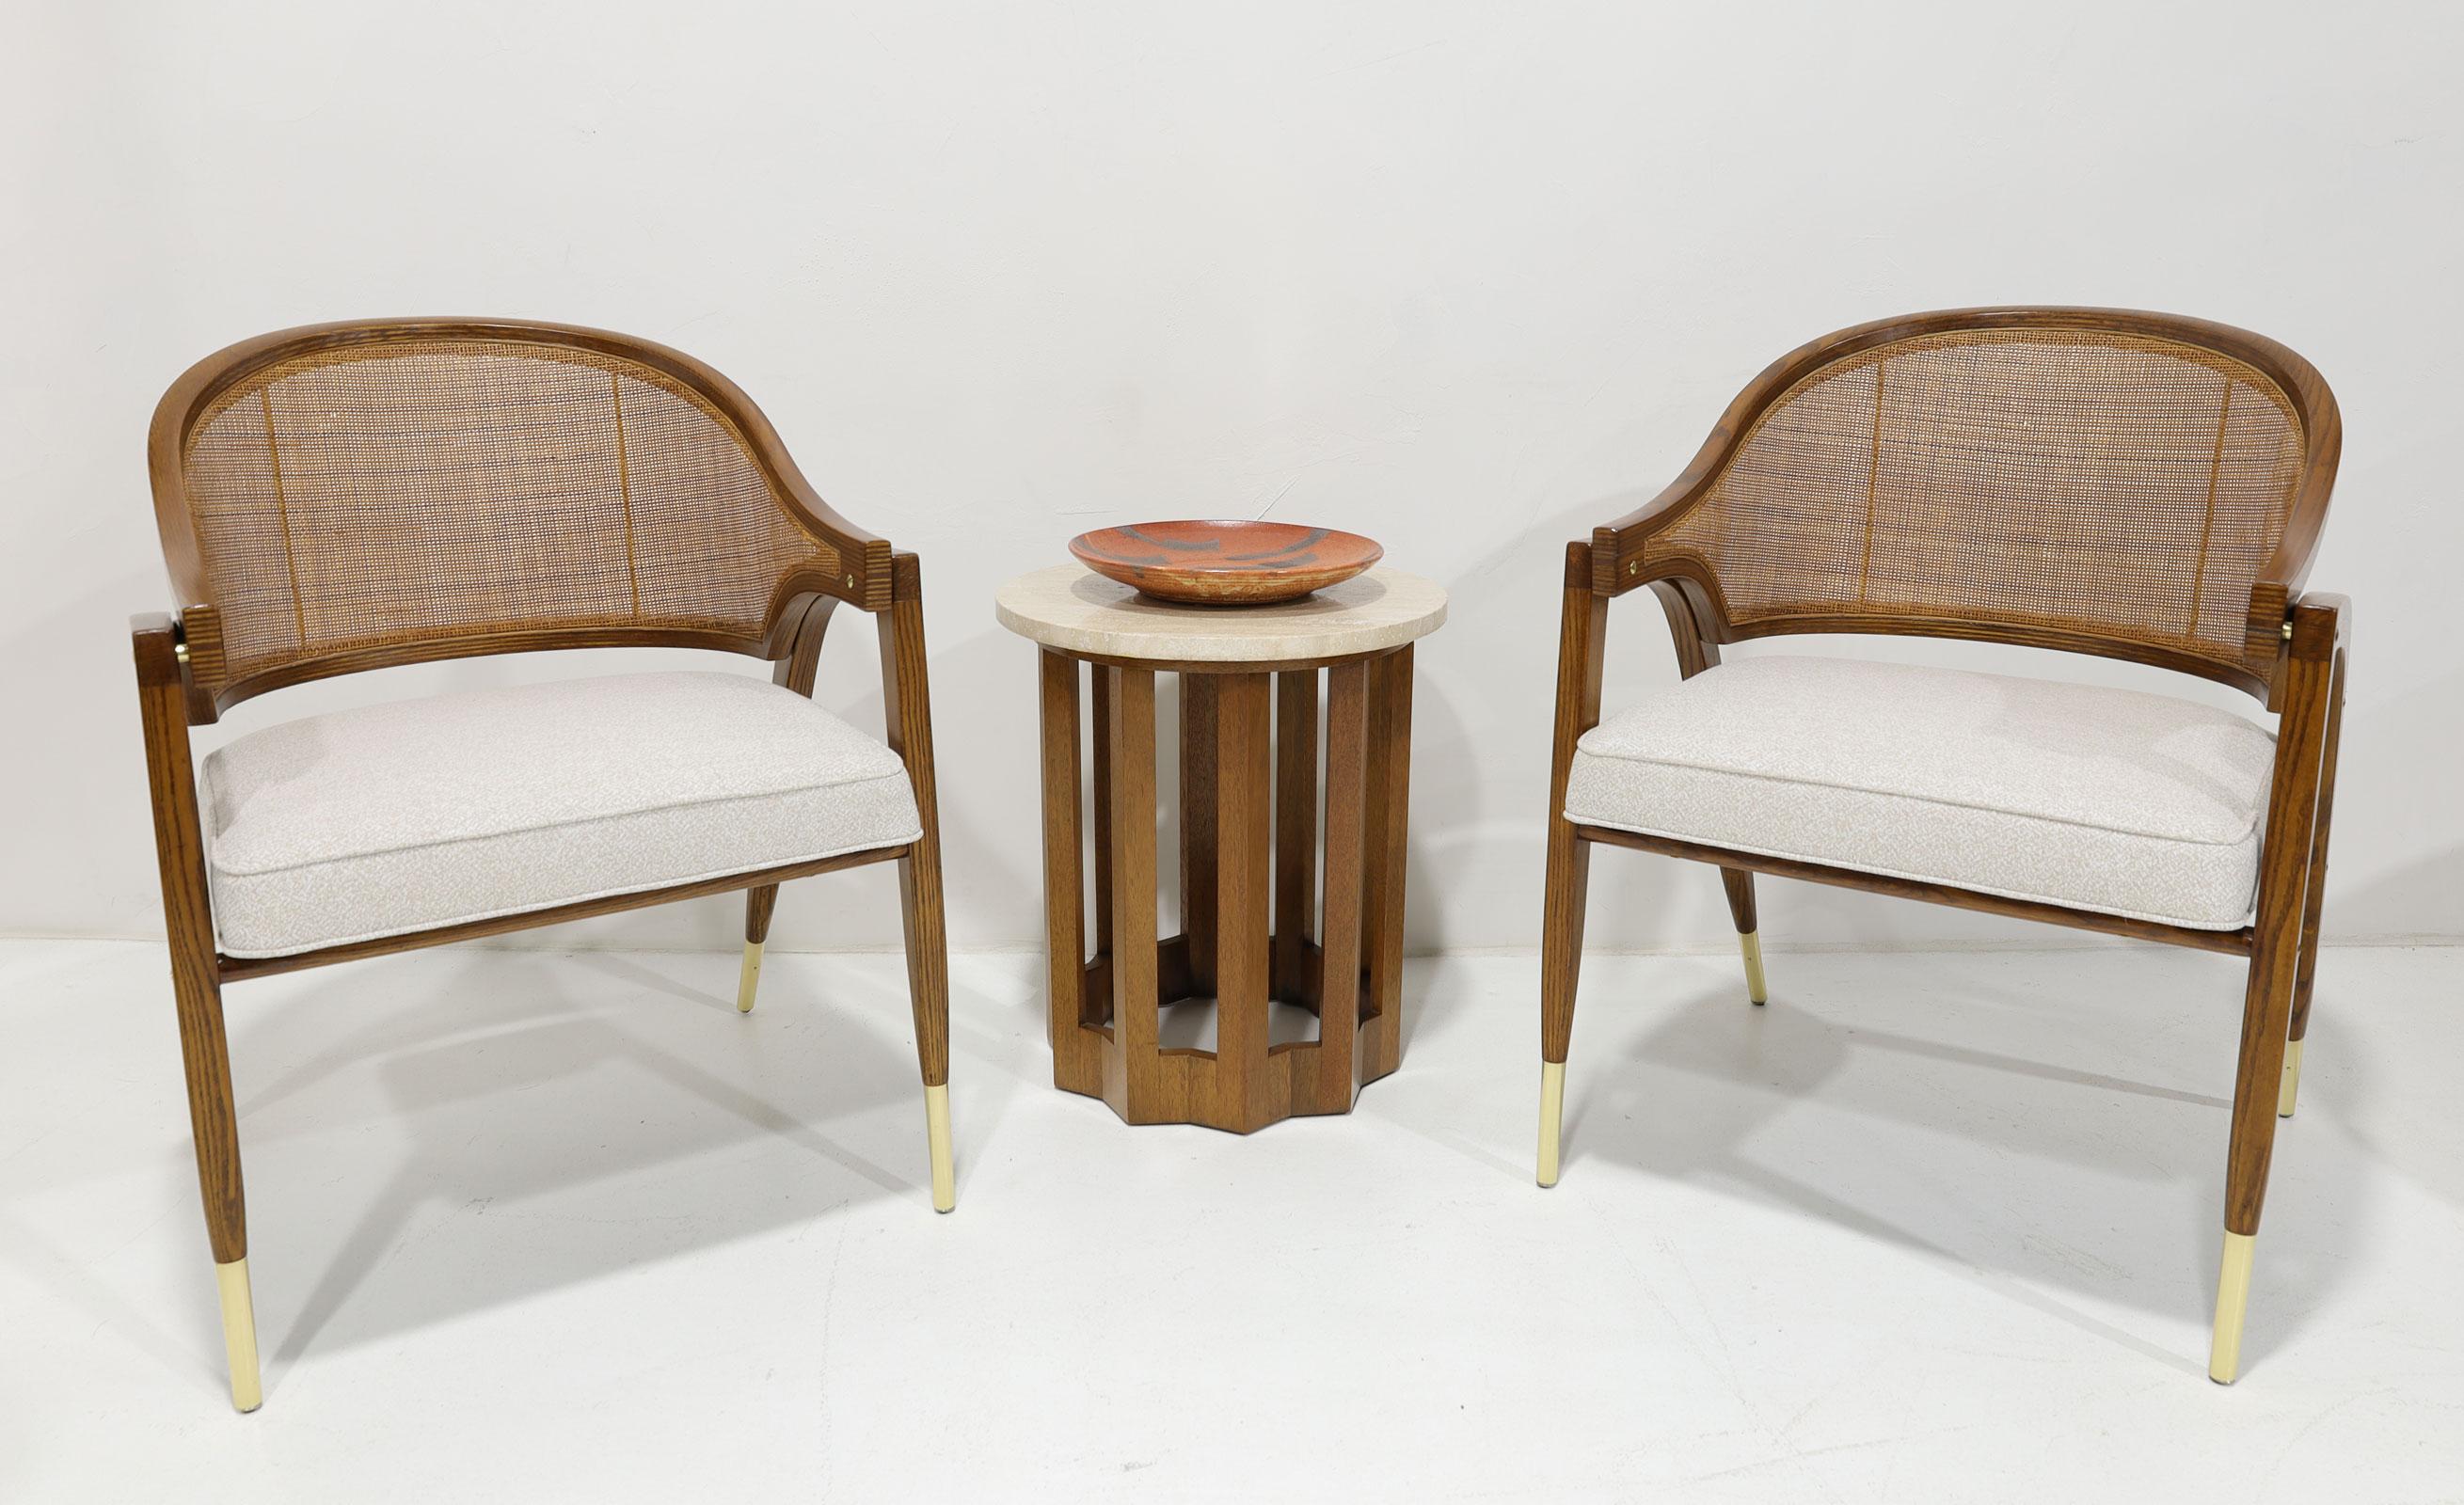 Einer der berühmtesten und elegantesten Stühle von Edward Wormley.  Ein zeitloses Meisterwerk. Der Kapitänsstuhl. Wir haben vollständig restauriert, um die schönen polierten Messing, Rohr zurück, geschwungenen Holzrahmen zu markieren. Sitzfläche neu